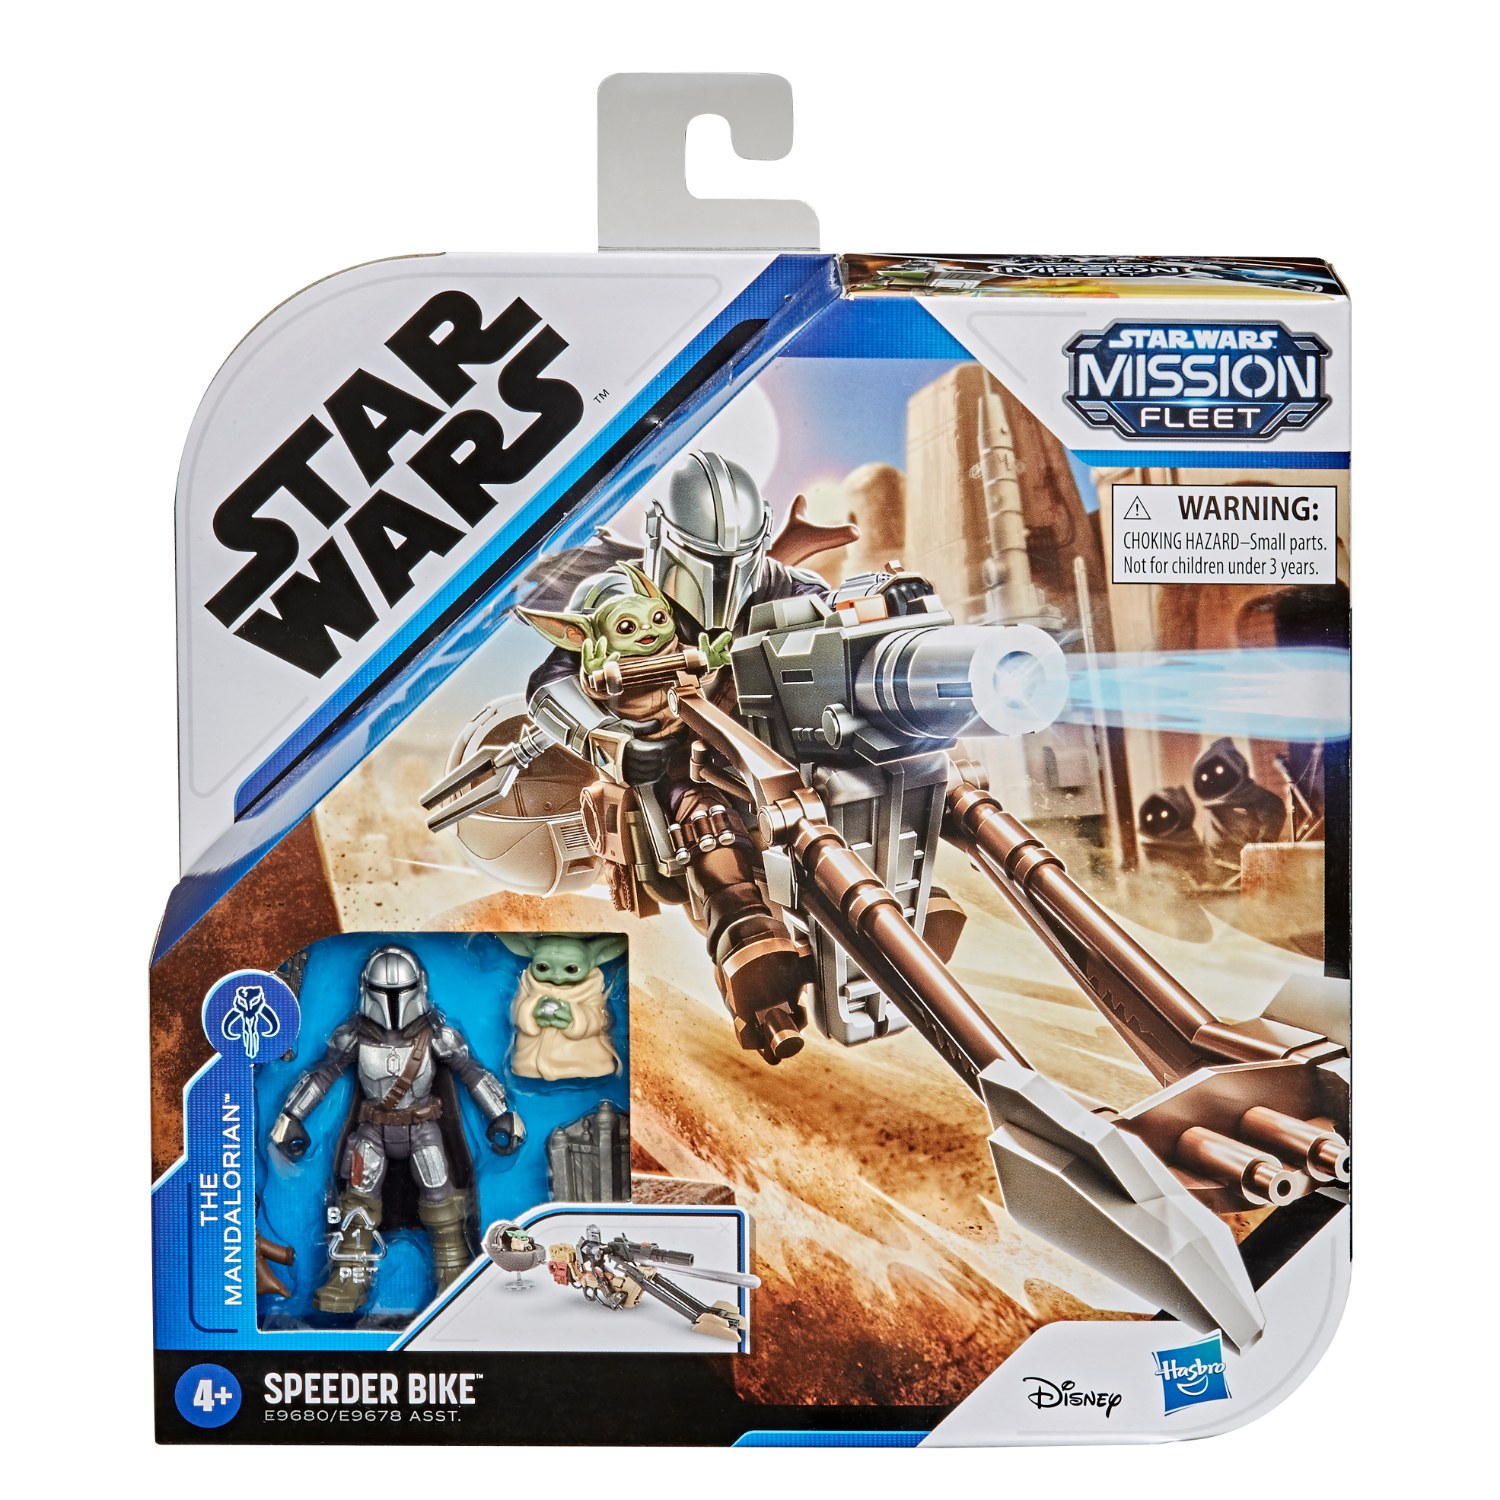 Hasbro Star Wars Mission Fleet Mando and The Child Speeder